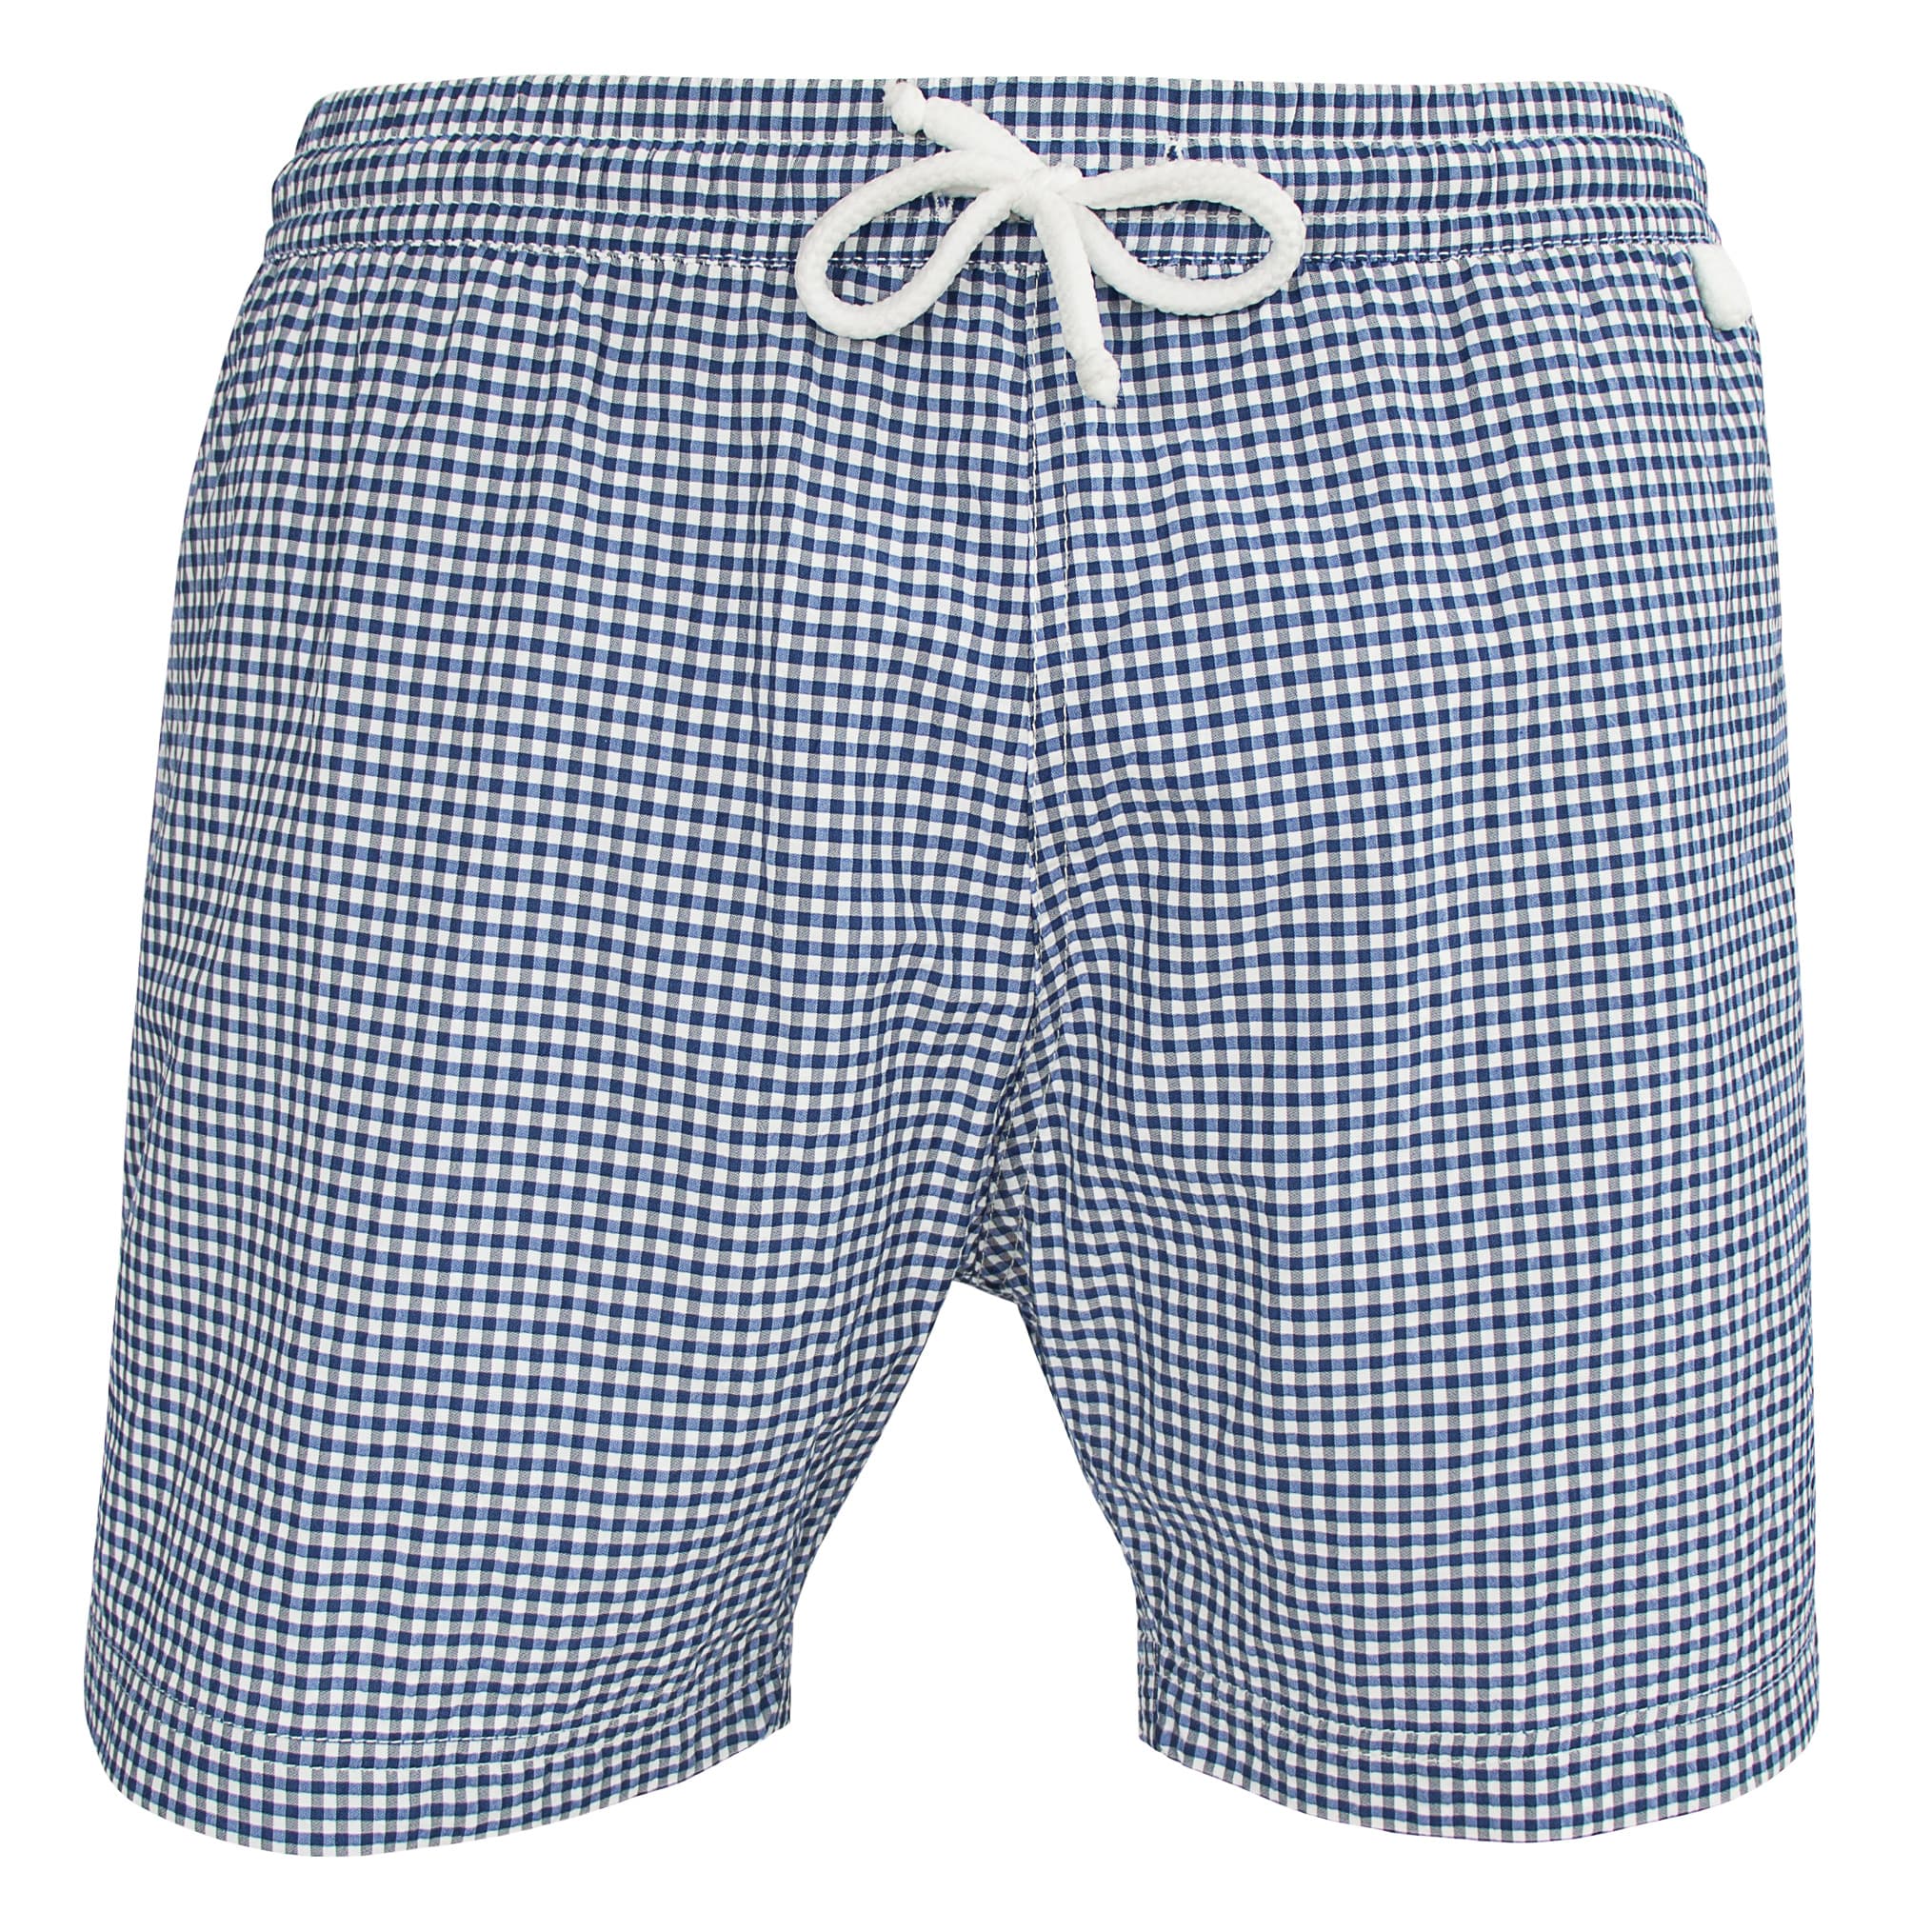 Montauk 701 - Vichy | Maillot Short de bain homme carreaux bleu noir et blanc